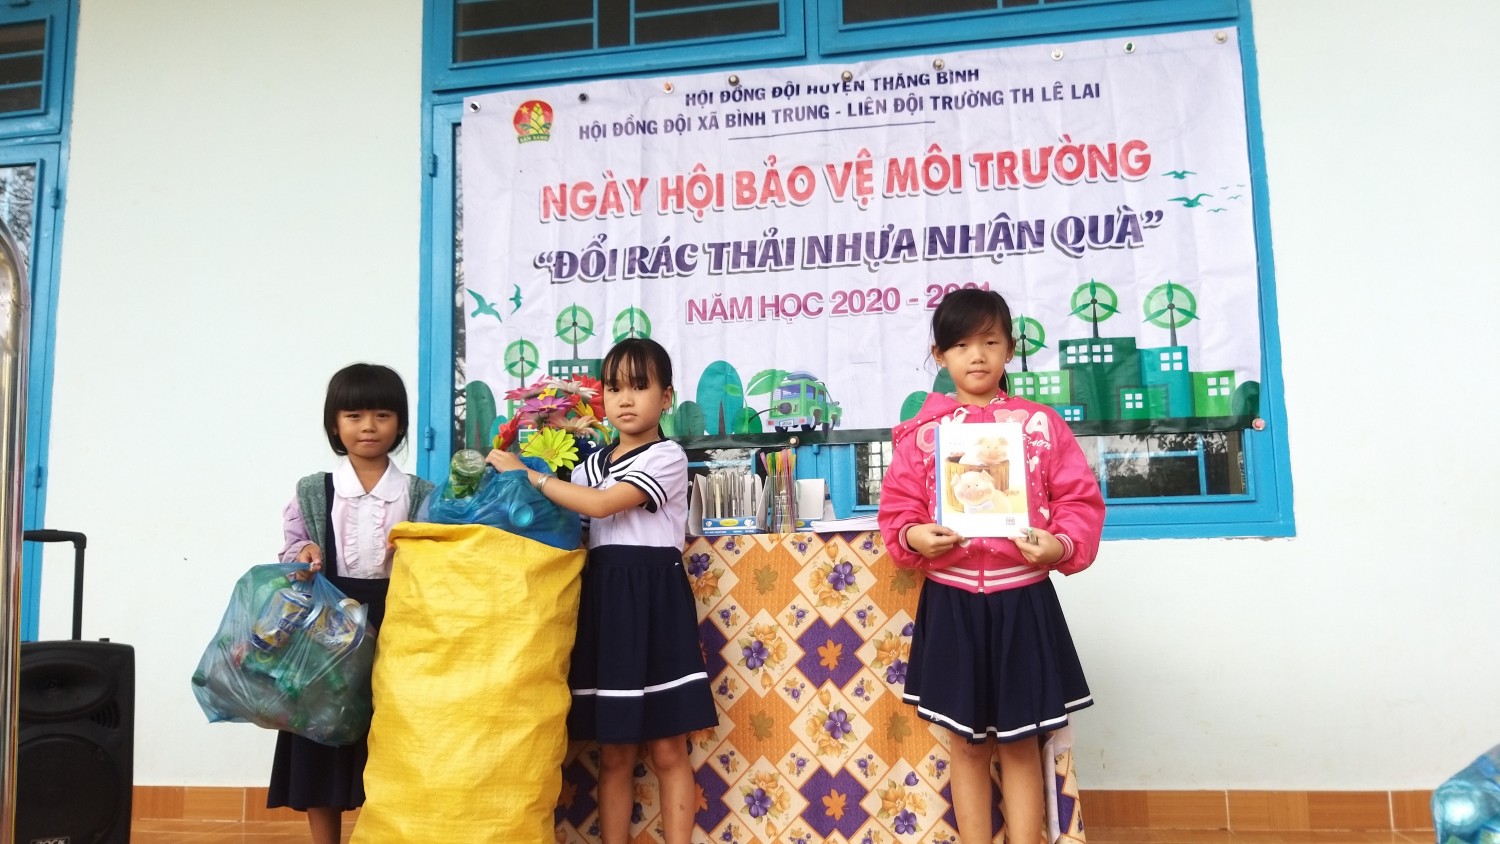 Liên đội trường TH Lê Lai tiếp tục thực hiện phong trào " Nói không với rác thải nhựa"